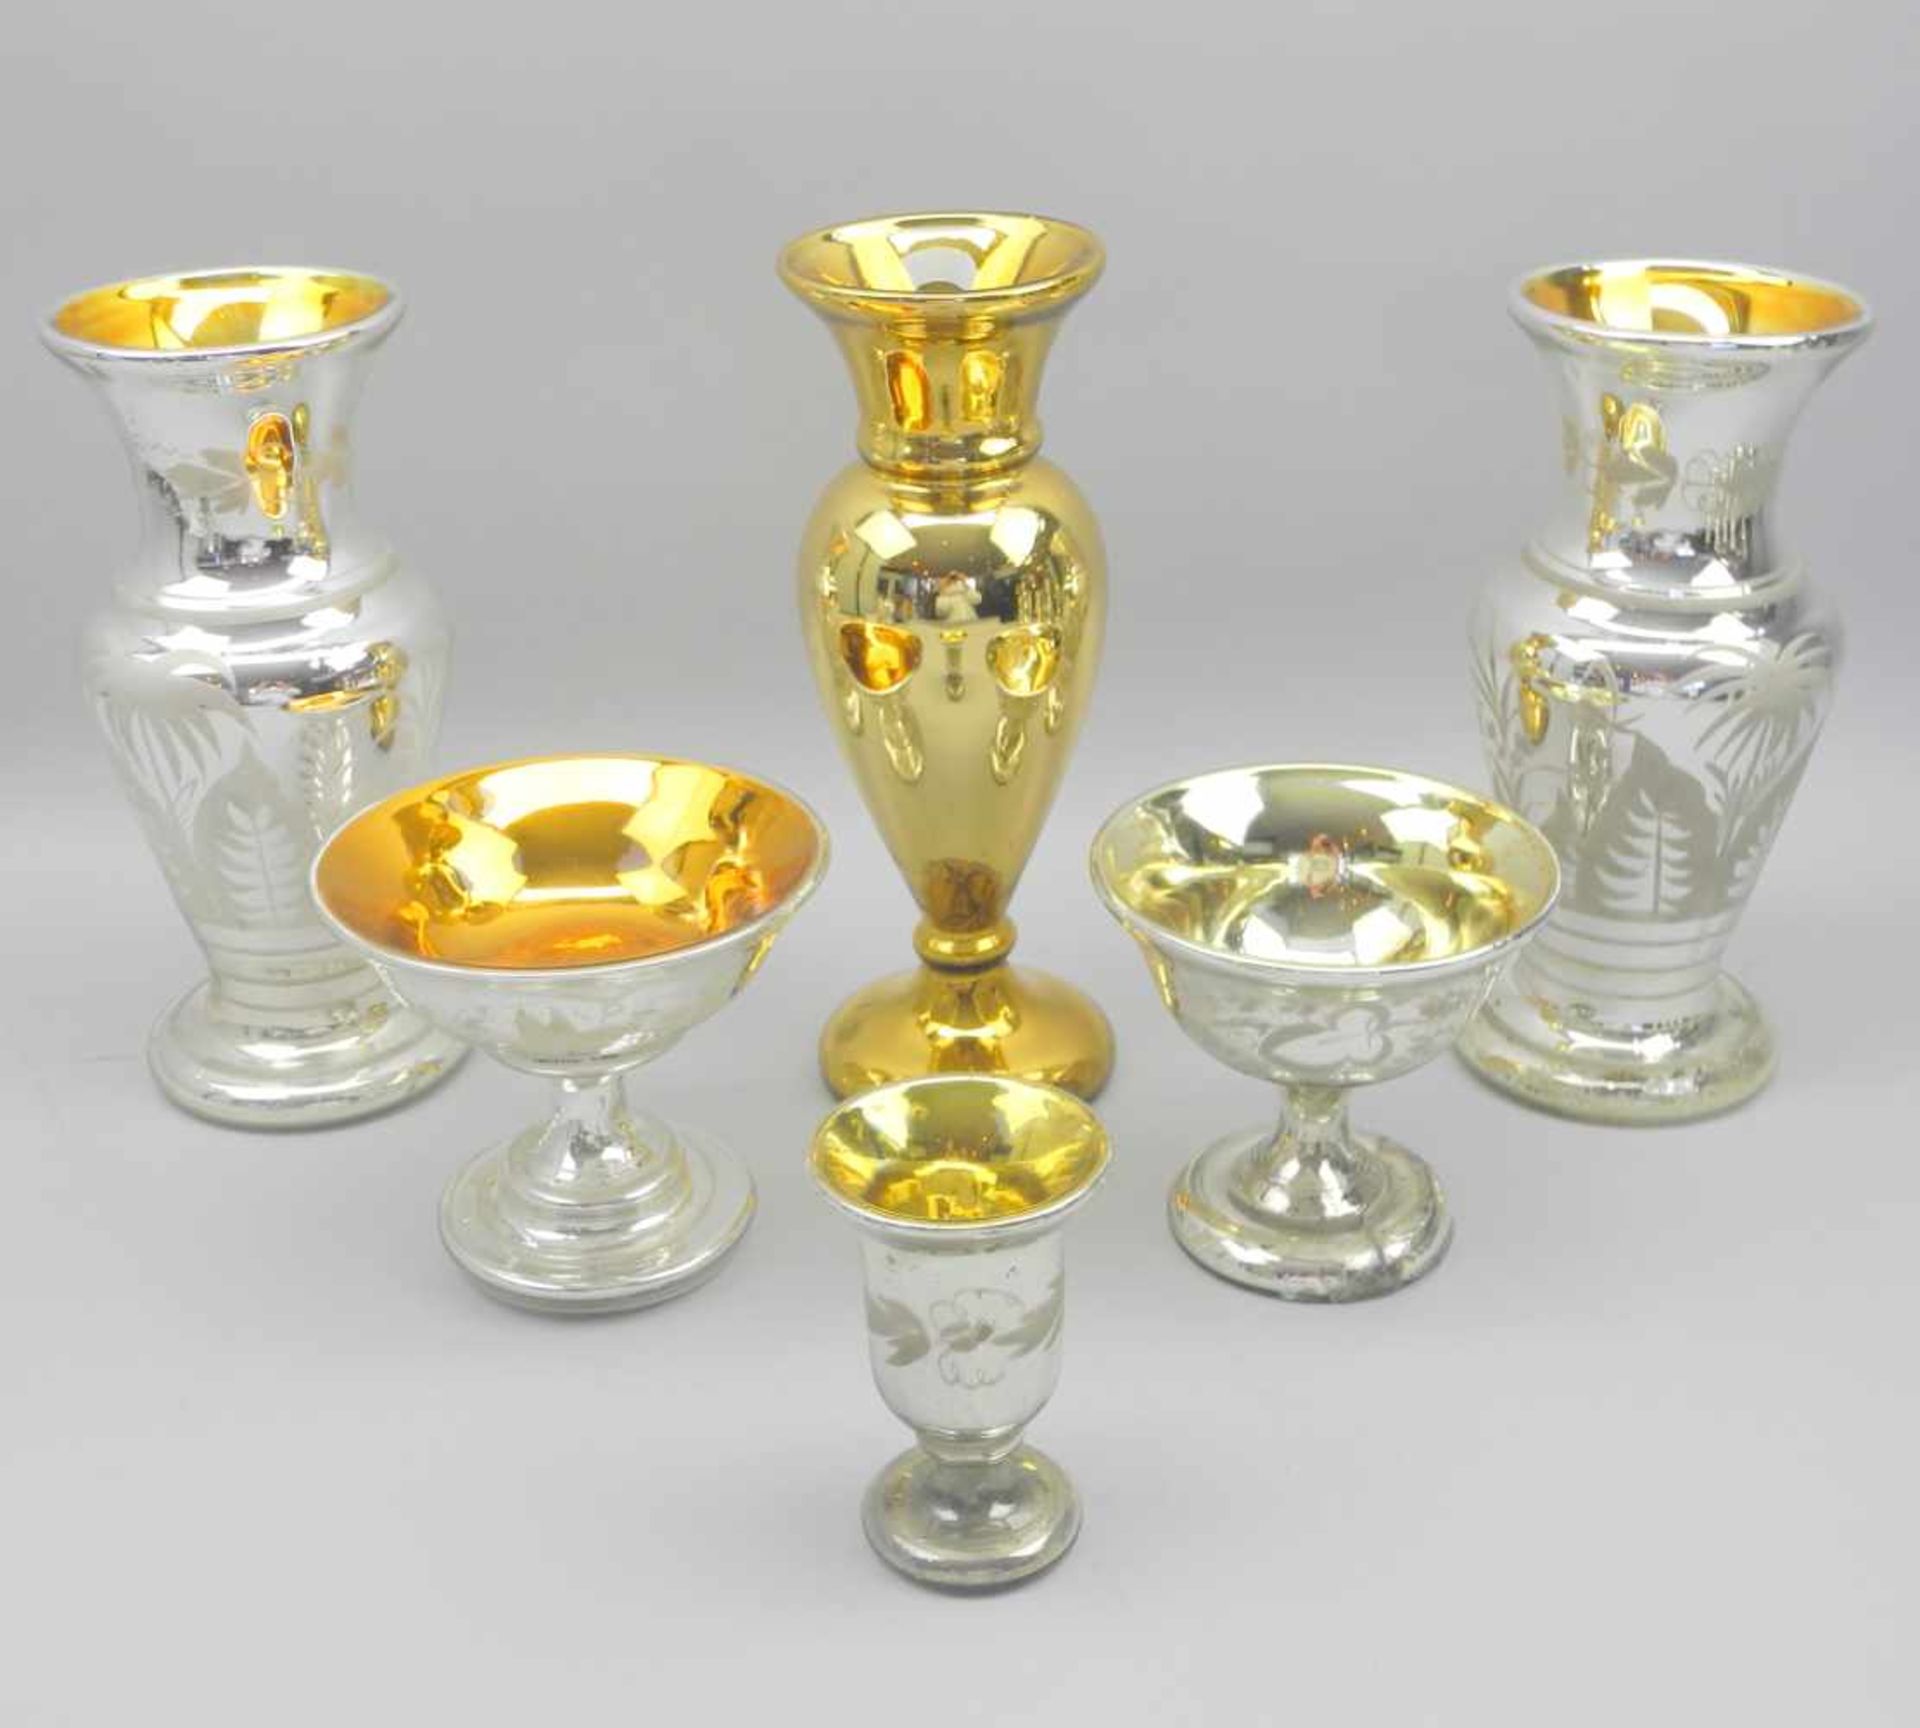 Konvolut von Vasen aus SilberglasSilberglas. 6-teiliges Konvolut: 3 große Vasen, 1 kleine Vase, 2